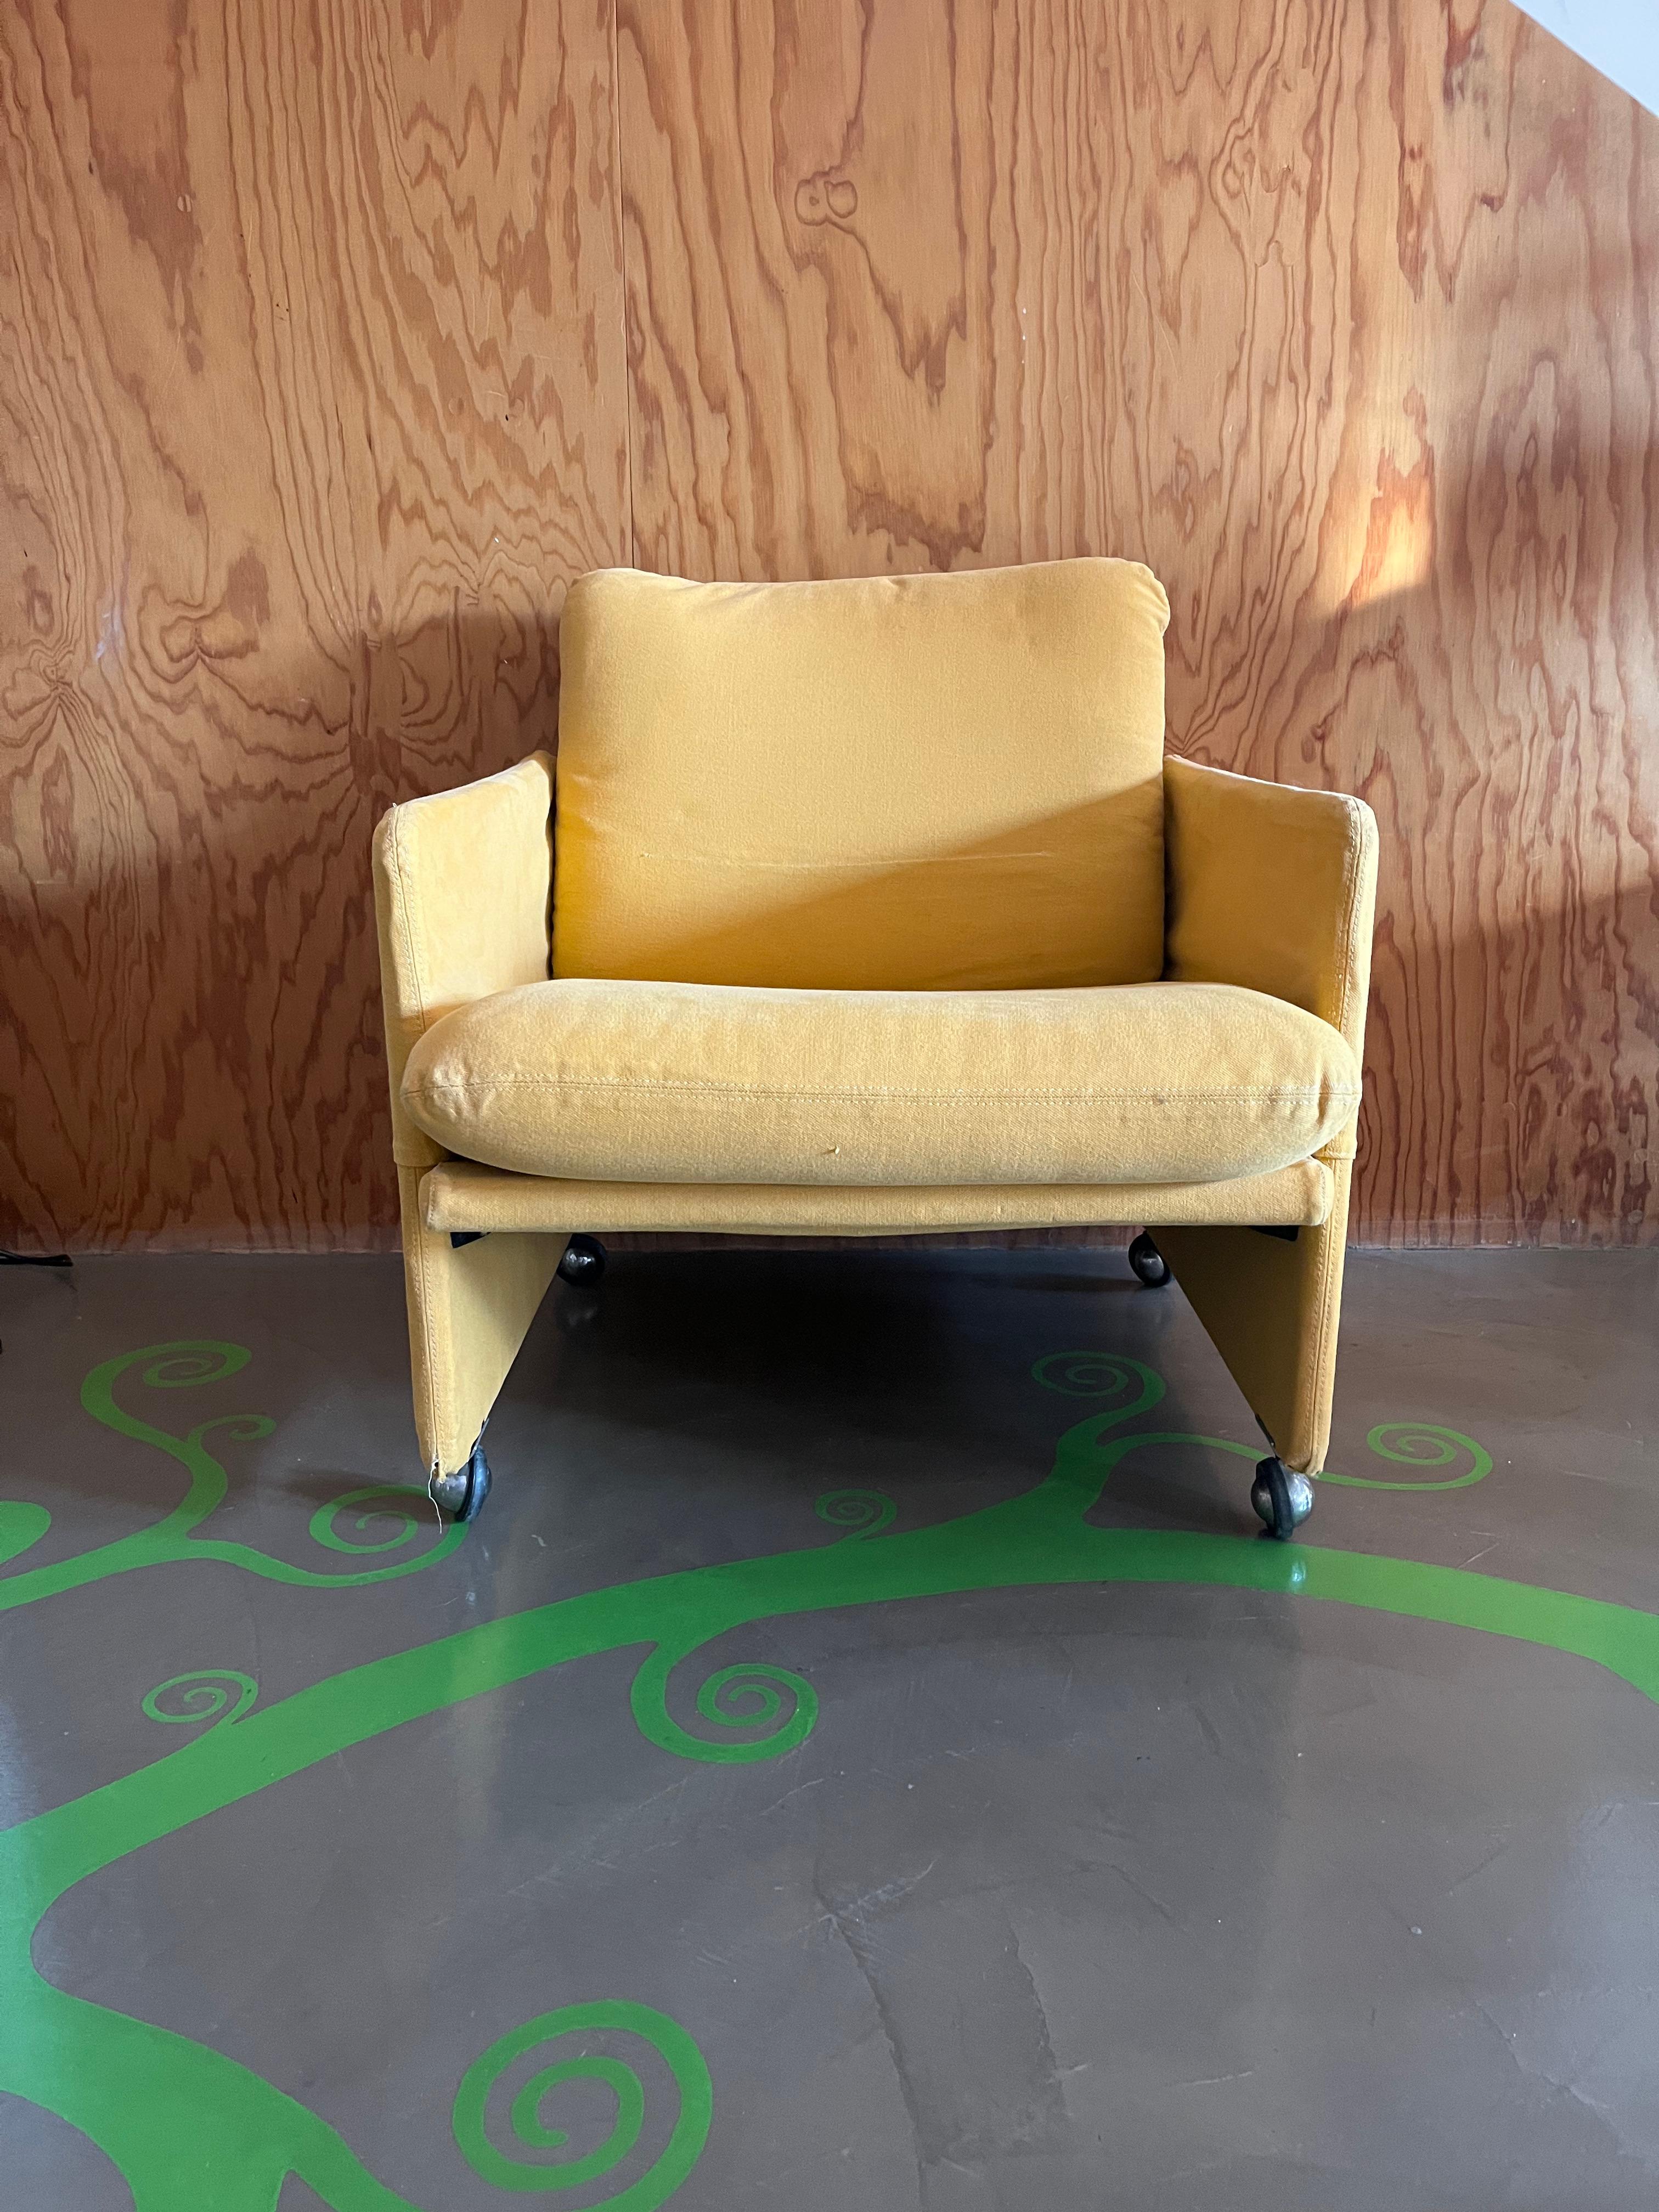 Wunderschöner Sessel, entworfen von Marco Zanuso für Arflex. 

Ein schöner und funktioneller, leichter Sessel, der in jedes Wohnzimmer passt und sich dank seiner originellen Chromrollen leicht bewegen lässt. Er ist klein und eignet sich perfekt zum